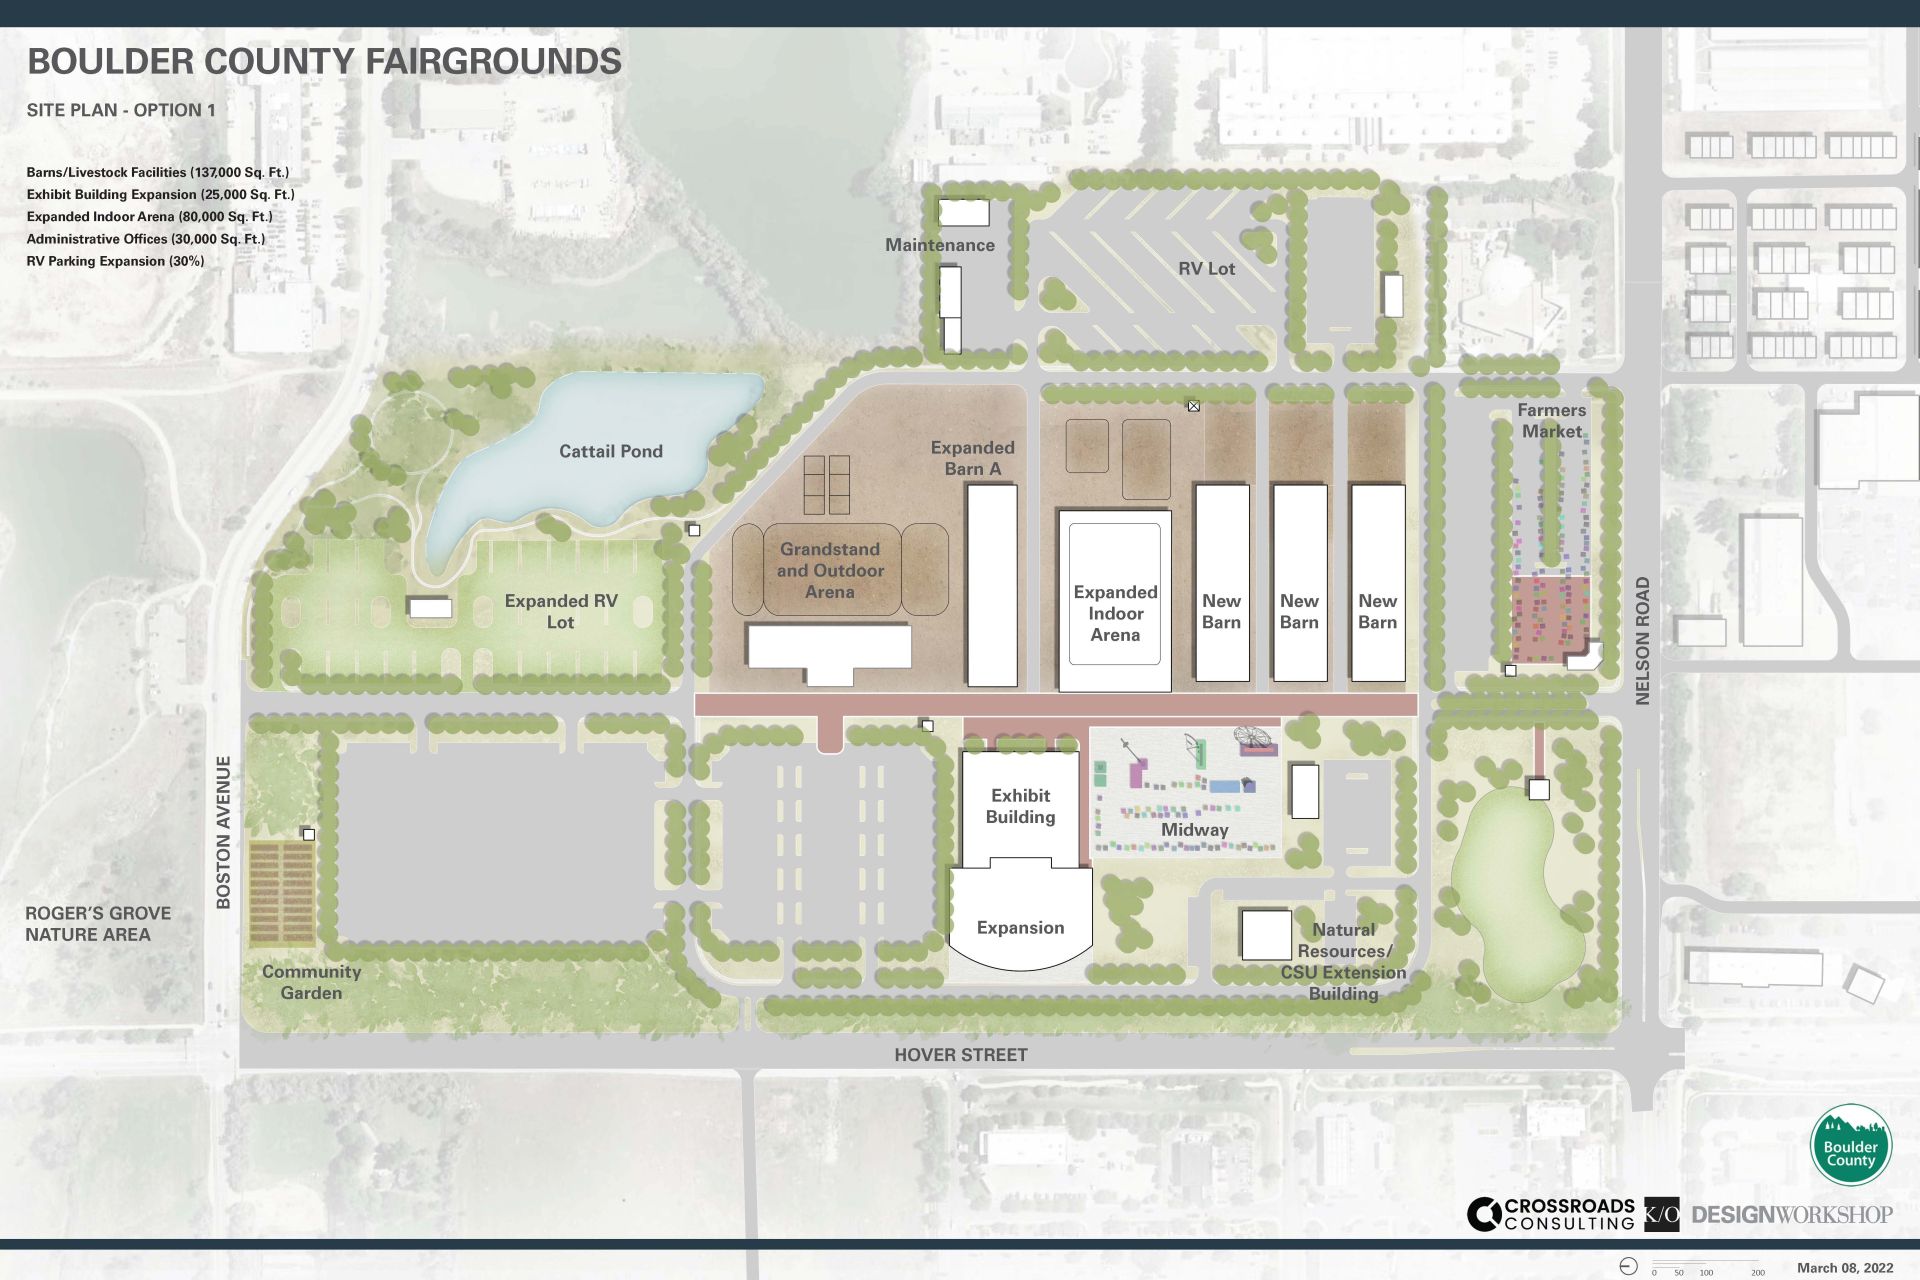 Fairgrounds Conceptual Site Plan: Option 1